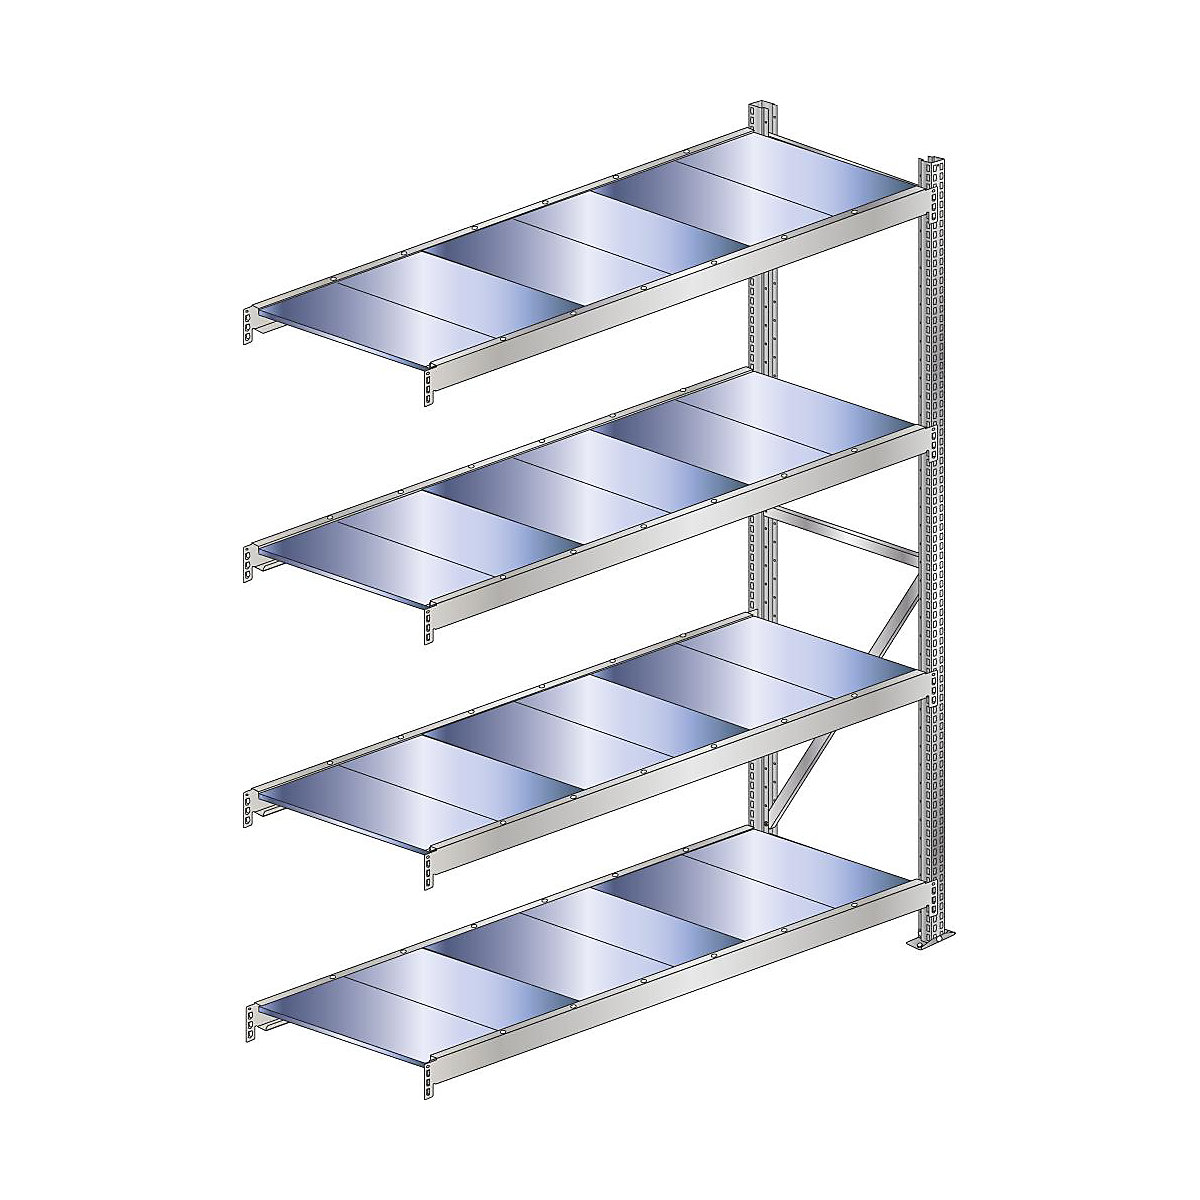 Wide span shelf unit, shelf load 500 kg – SCHULTE, shelf width 2250 mm, extension shelf unit, height 2500 mm, depth 500 mm